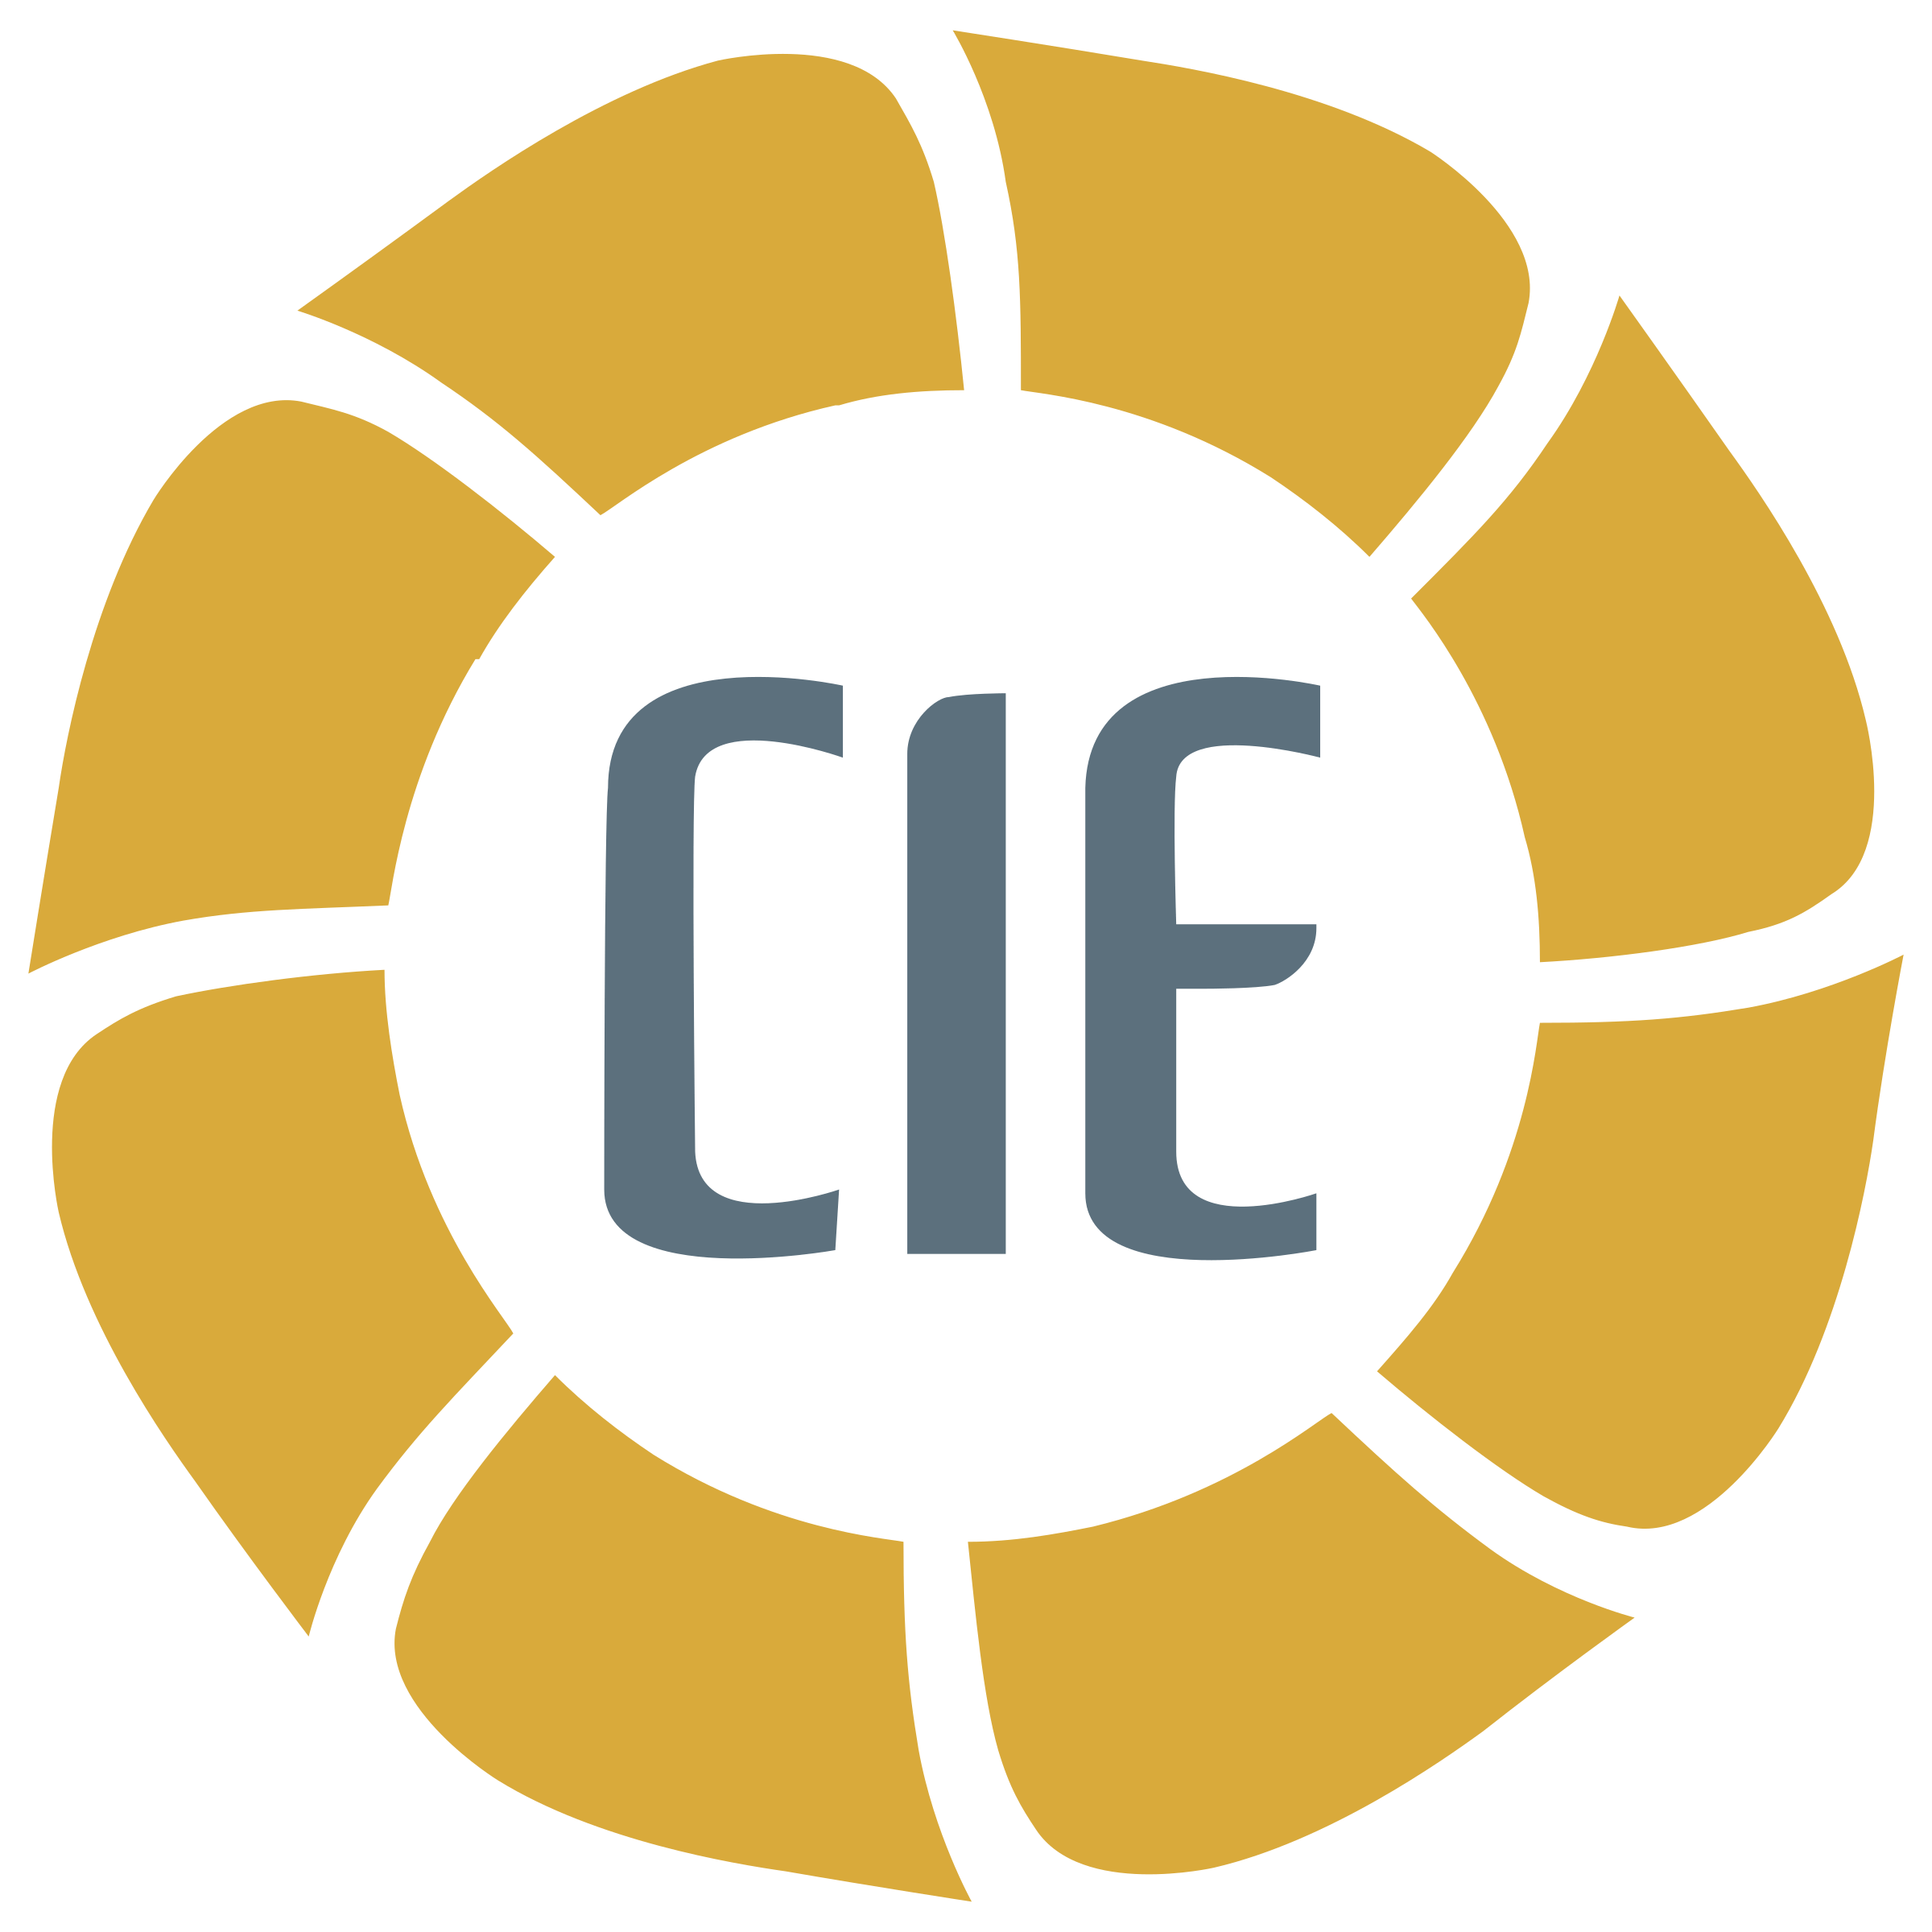 CIE Logo - CIE Group Logo PNG Transparent & SVG Vector - Freebie Supply